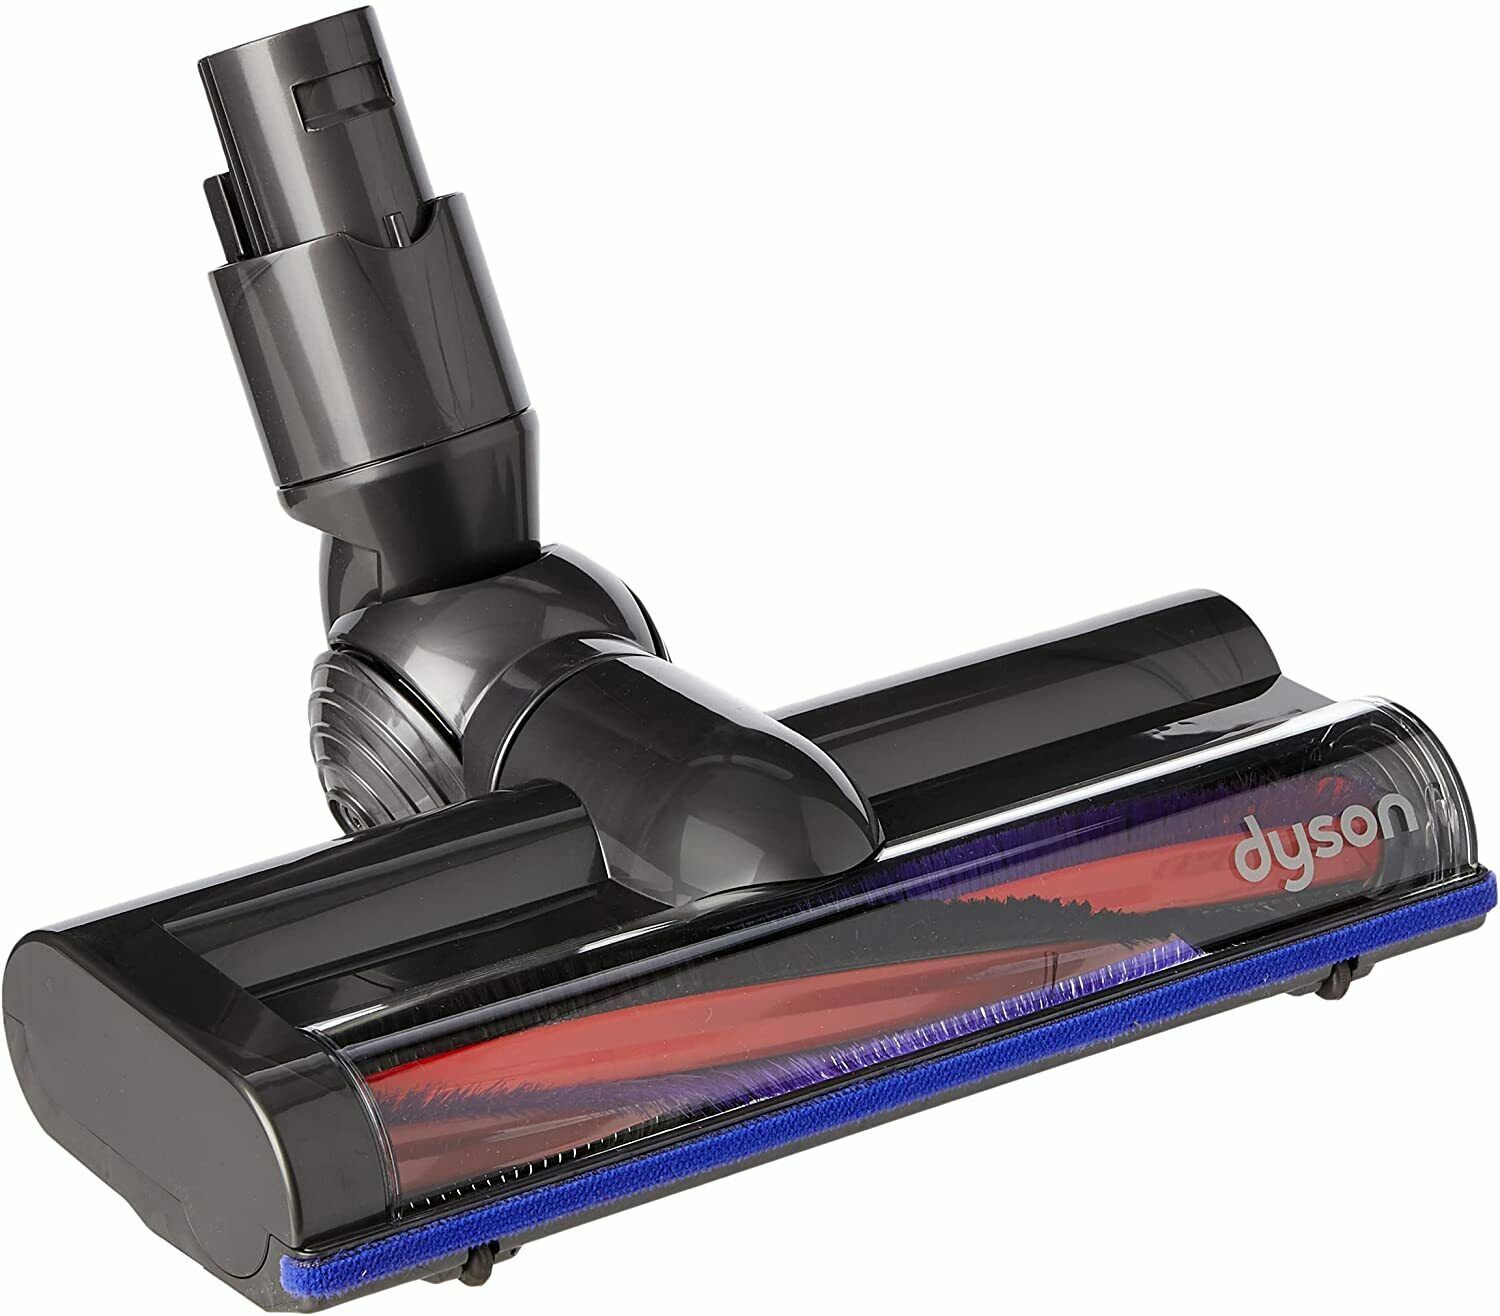 Dyson DC59 Animal Digital Slim Cordless Vacuum Cleaner Brush Tool for V6